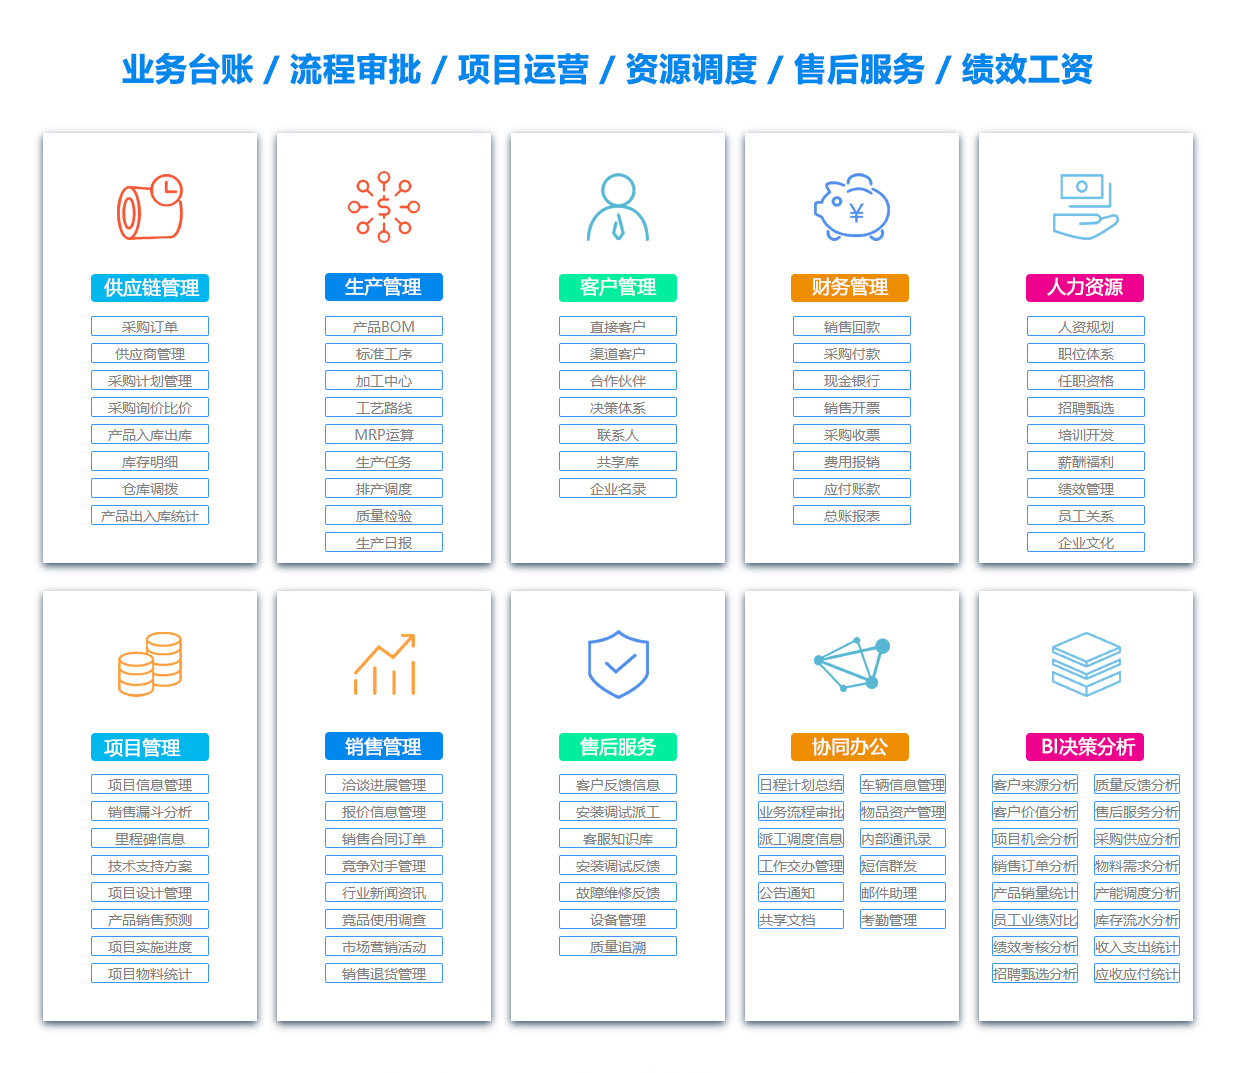 郑州客户资料管理系统